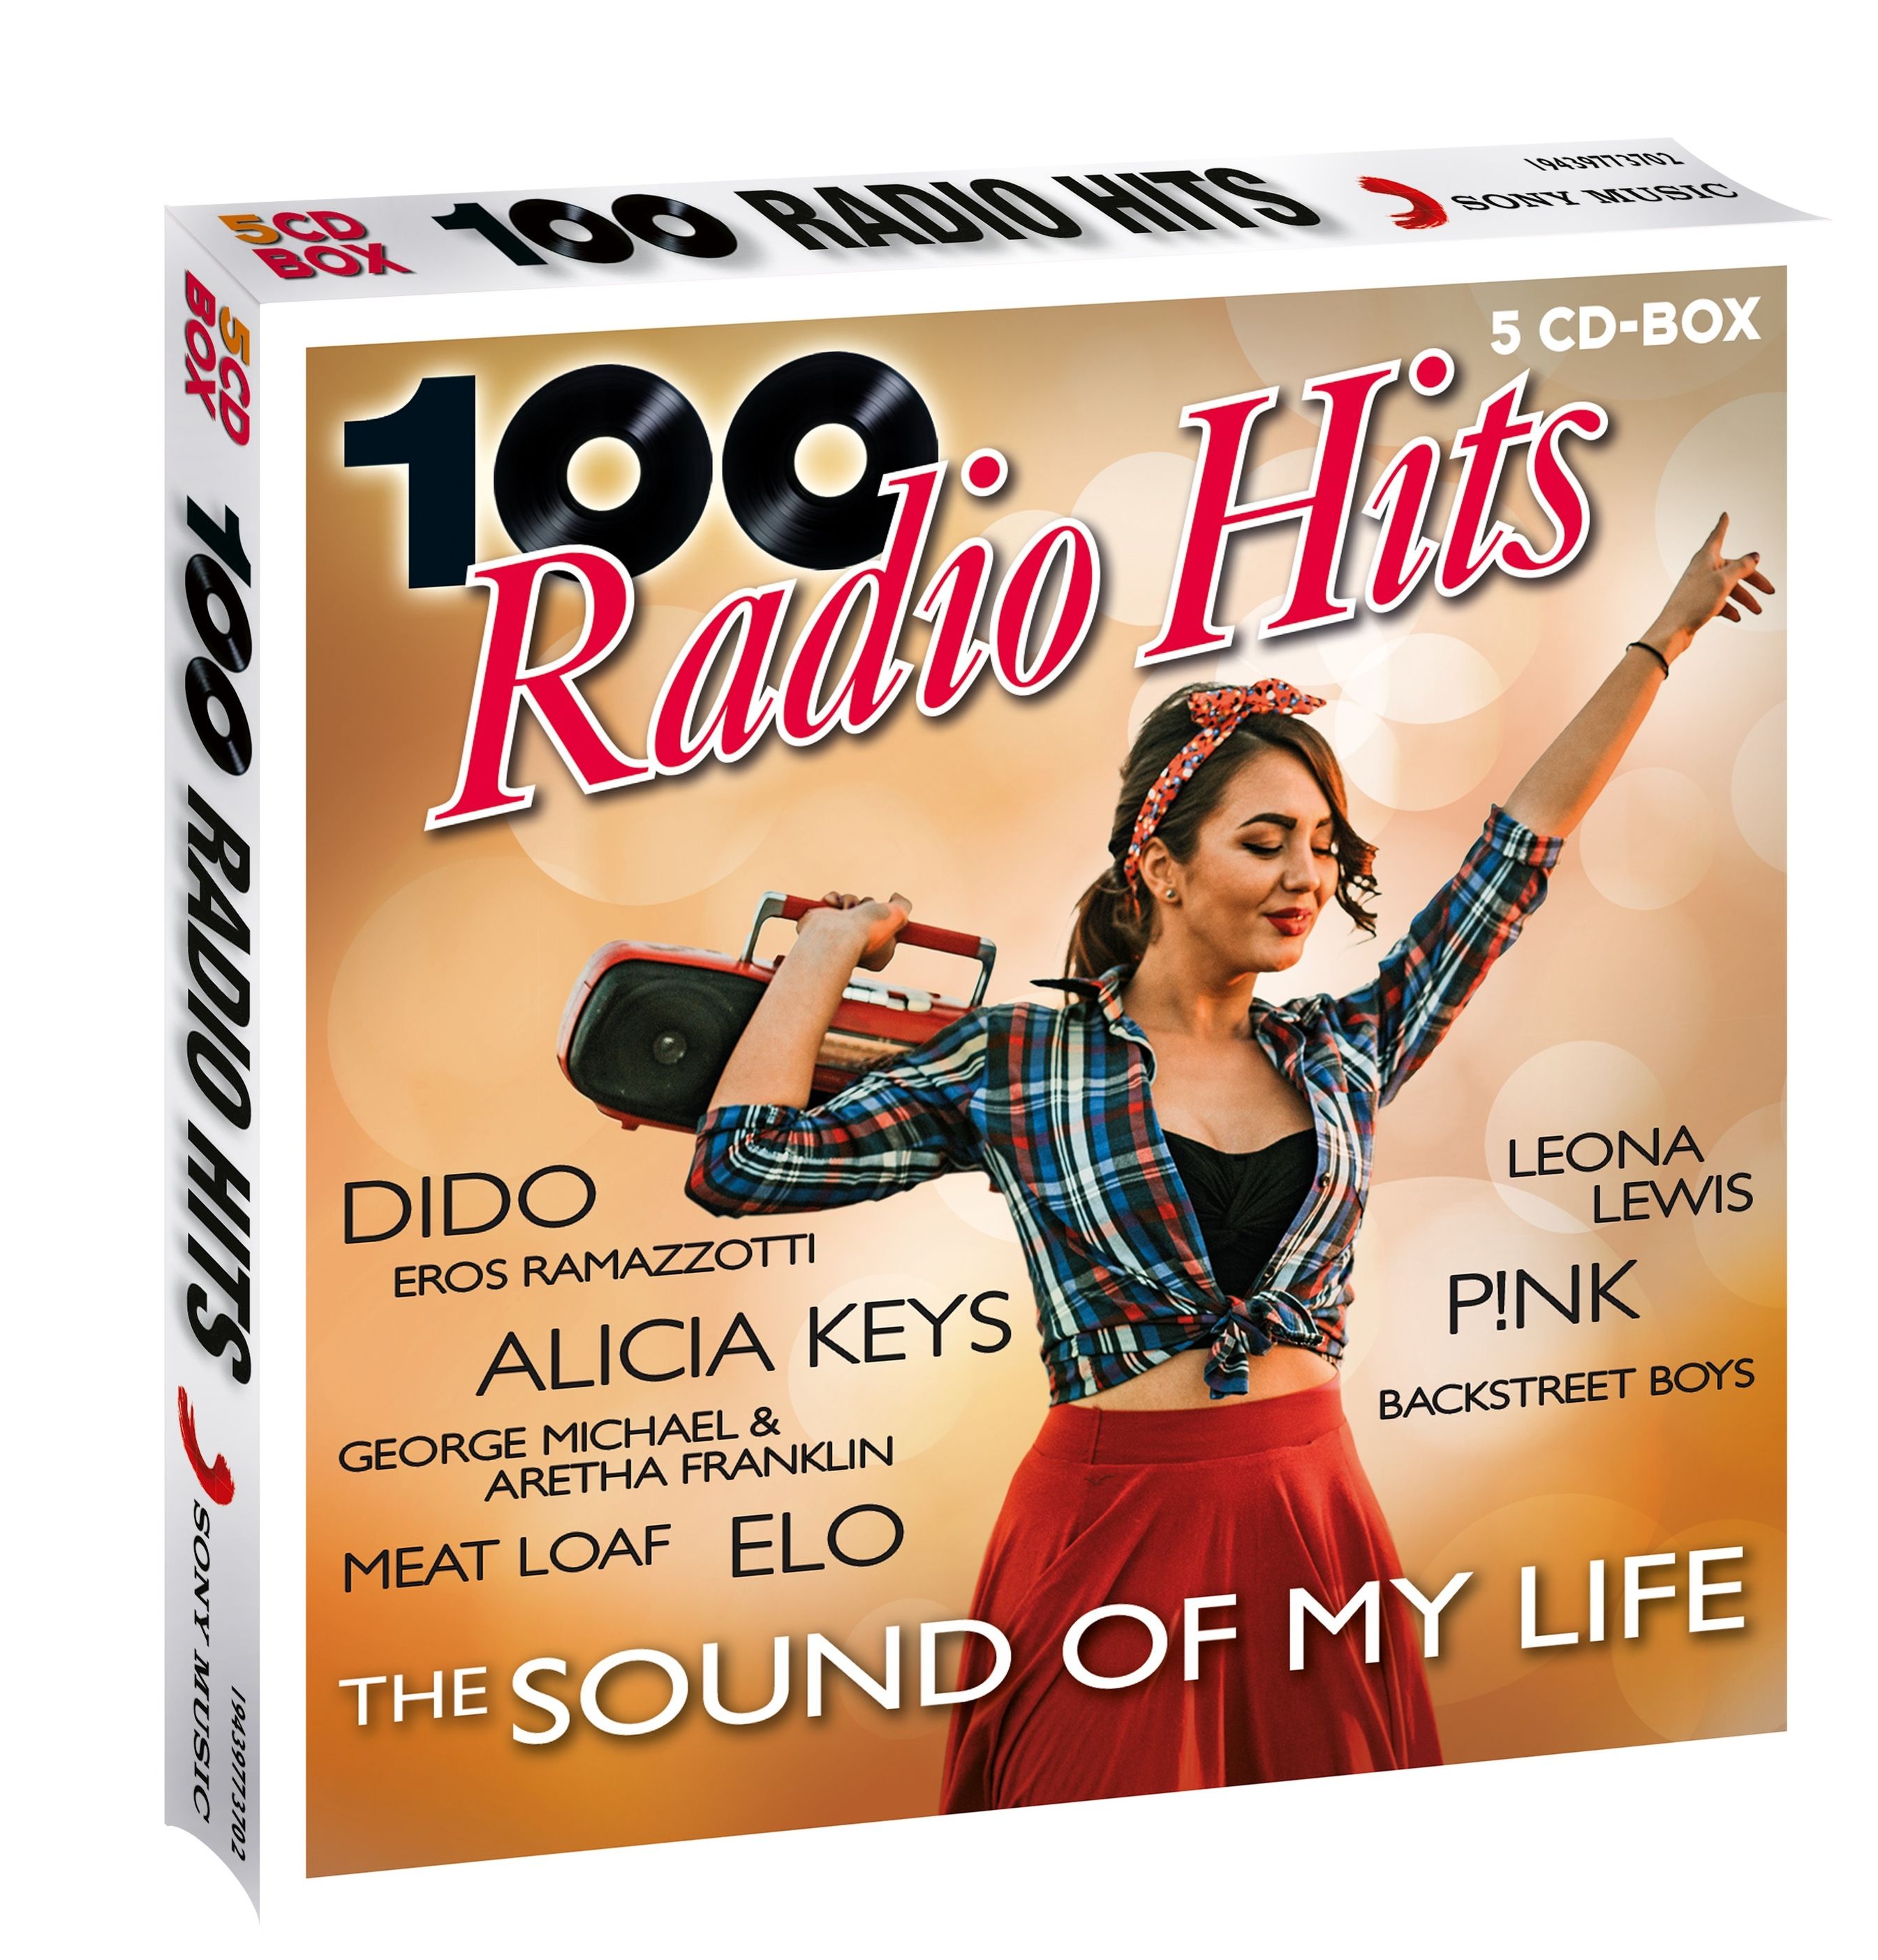 100 Radio Hits - The Sound Of My Life 5CD-Box von Diverse Interpreten |  Weltbild.de